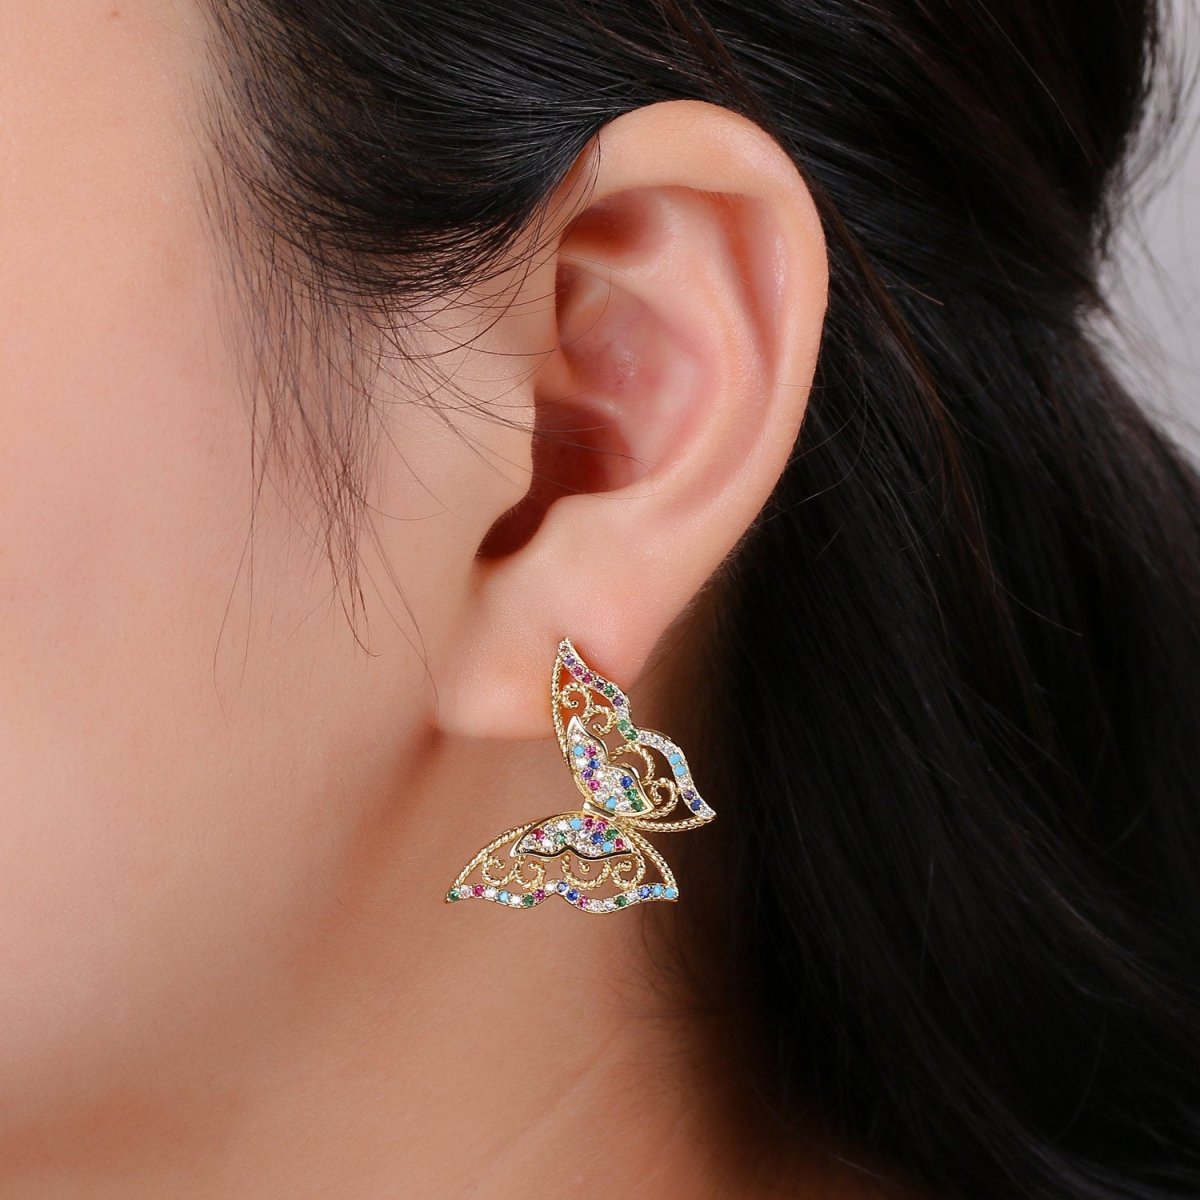 Butterfly earrings, Mariposa Butterfly stud earrings, Statement earrings, Micro Pave Stud delicate studs, gold earrings, Animal earrings Q-524 - DLUXCA